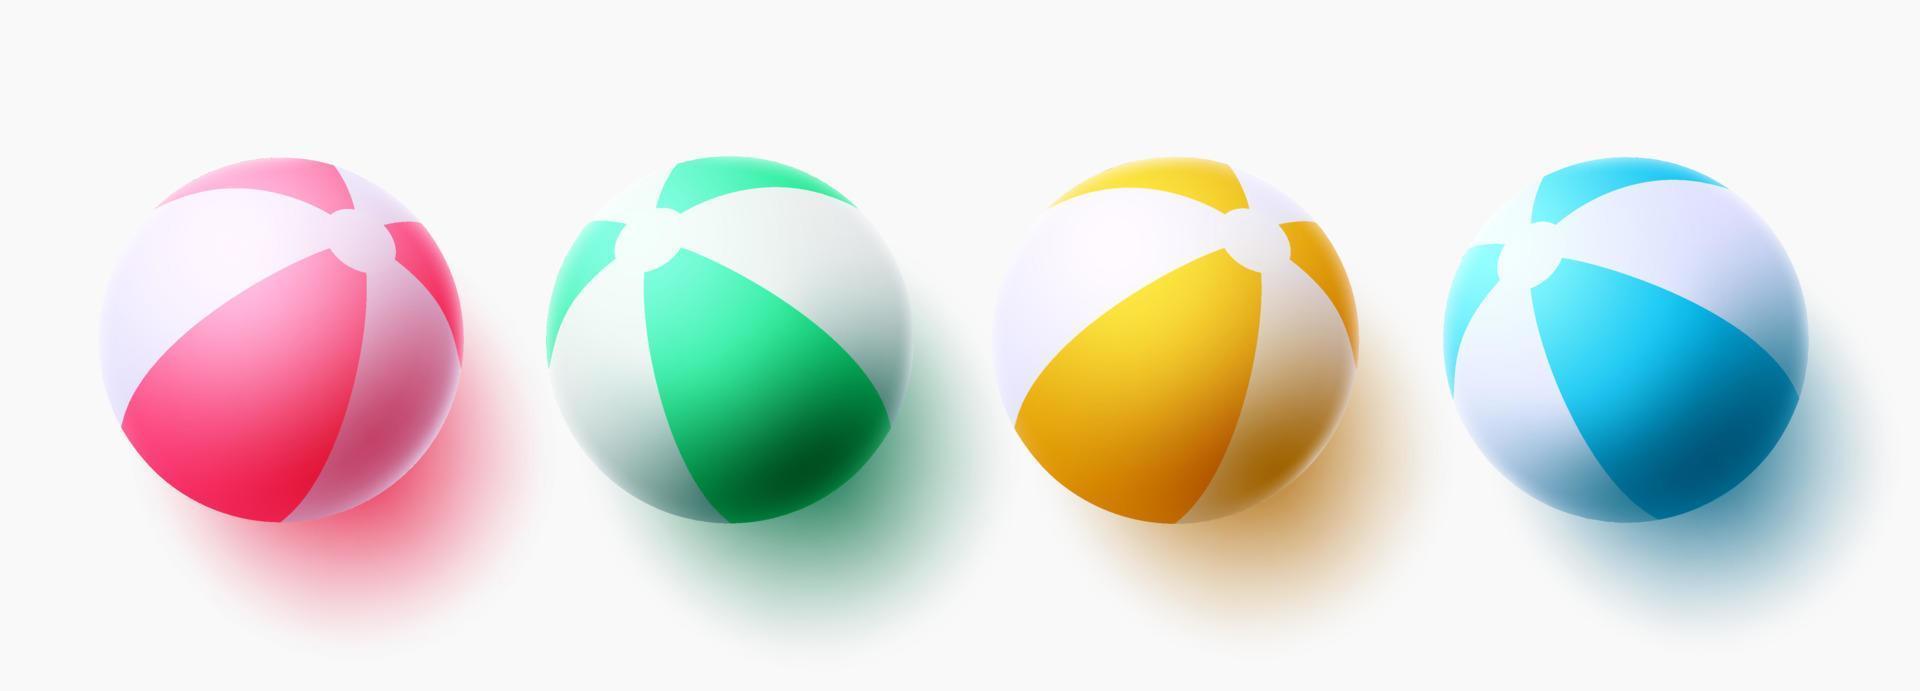 conception de jeu de vecteur de ballon de plage. collection d'éléments de ballons de plage dans des motifs à rayures colorées pour les sports d'été et les jeux de loisirs. illustration vectorielle.